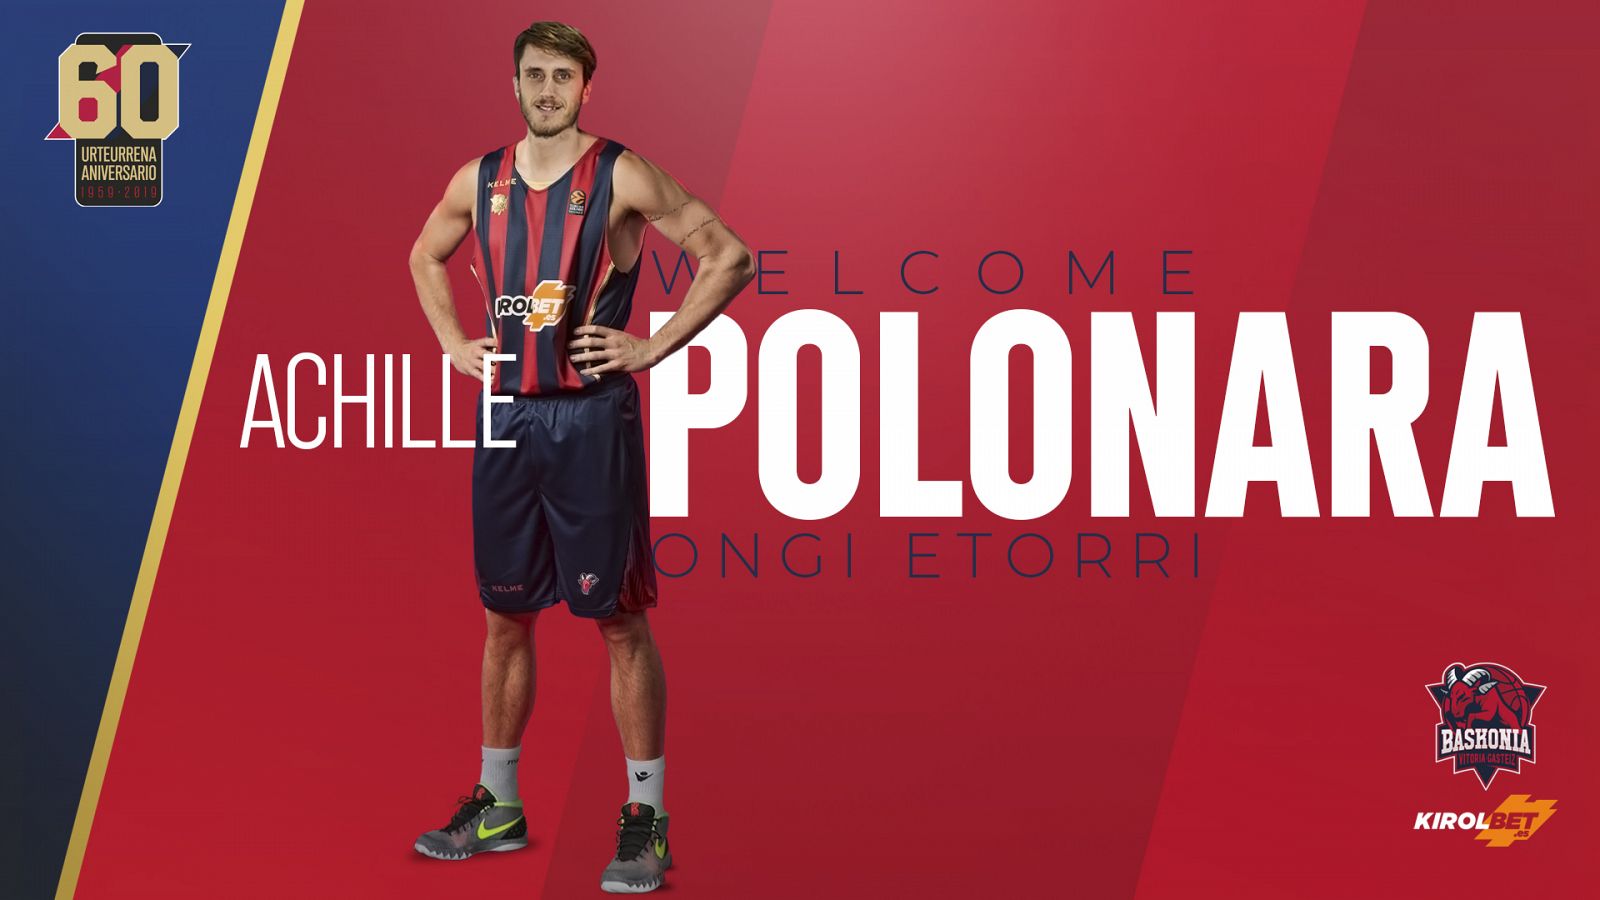 Cartel de bienvenida para Polonara en la web del Baskonia.